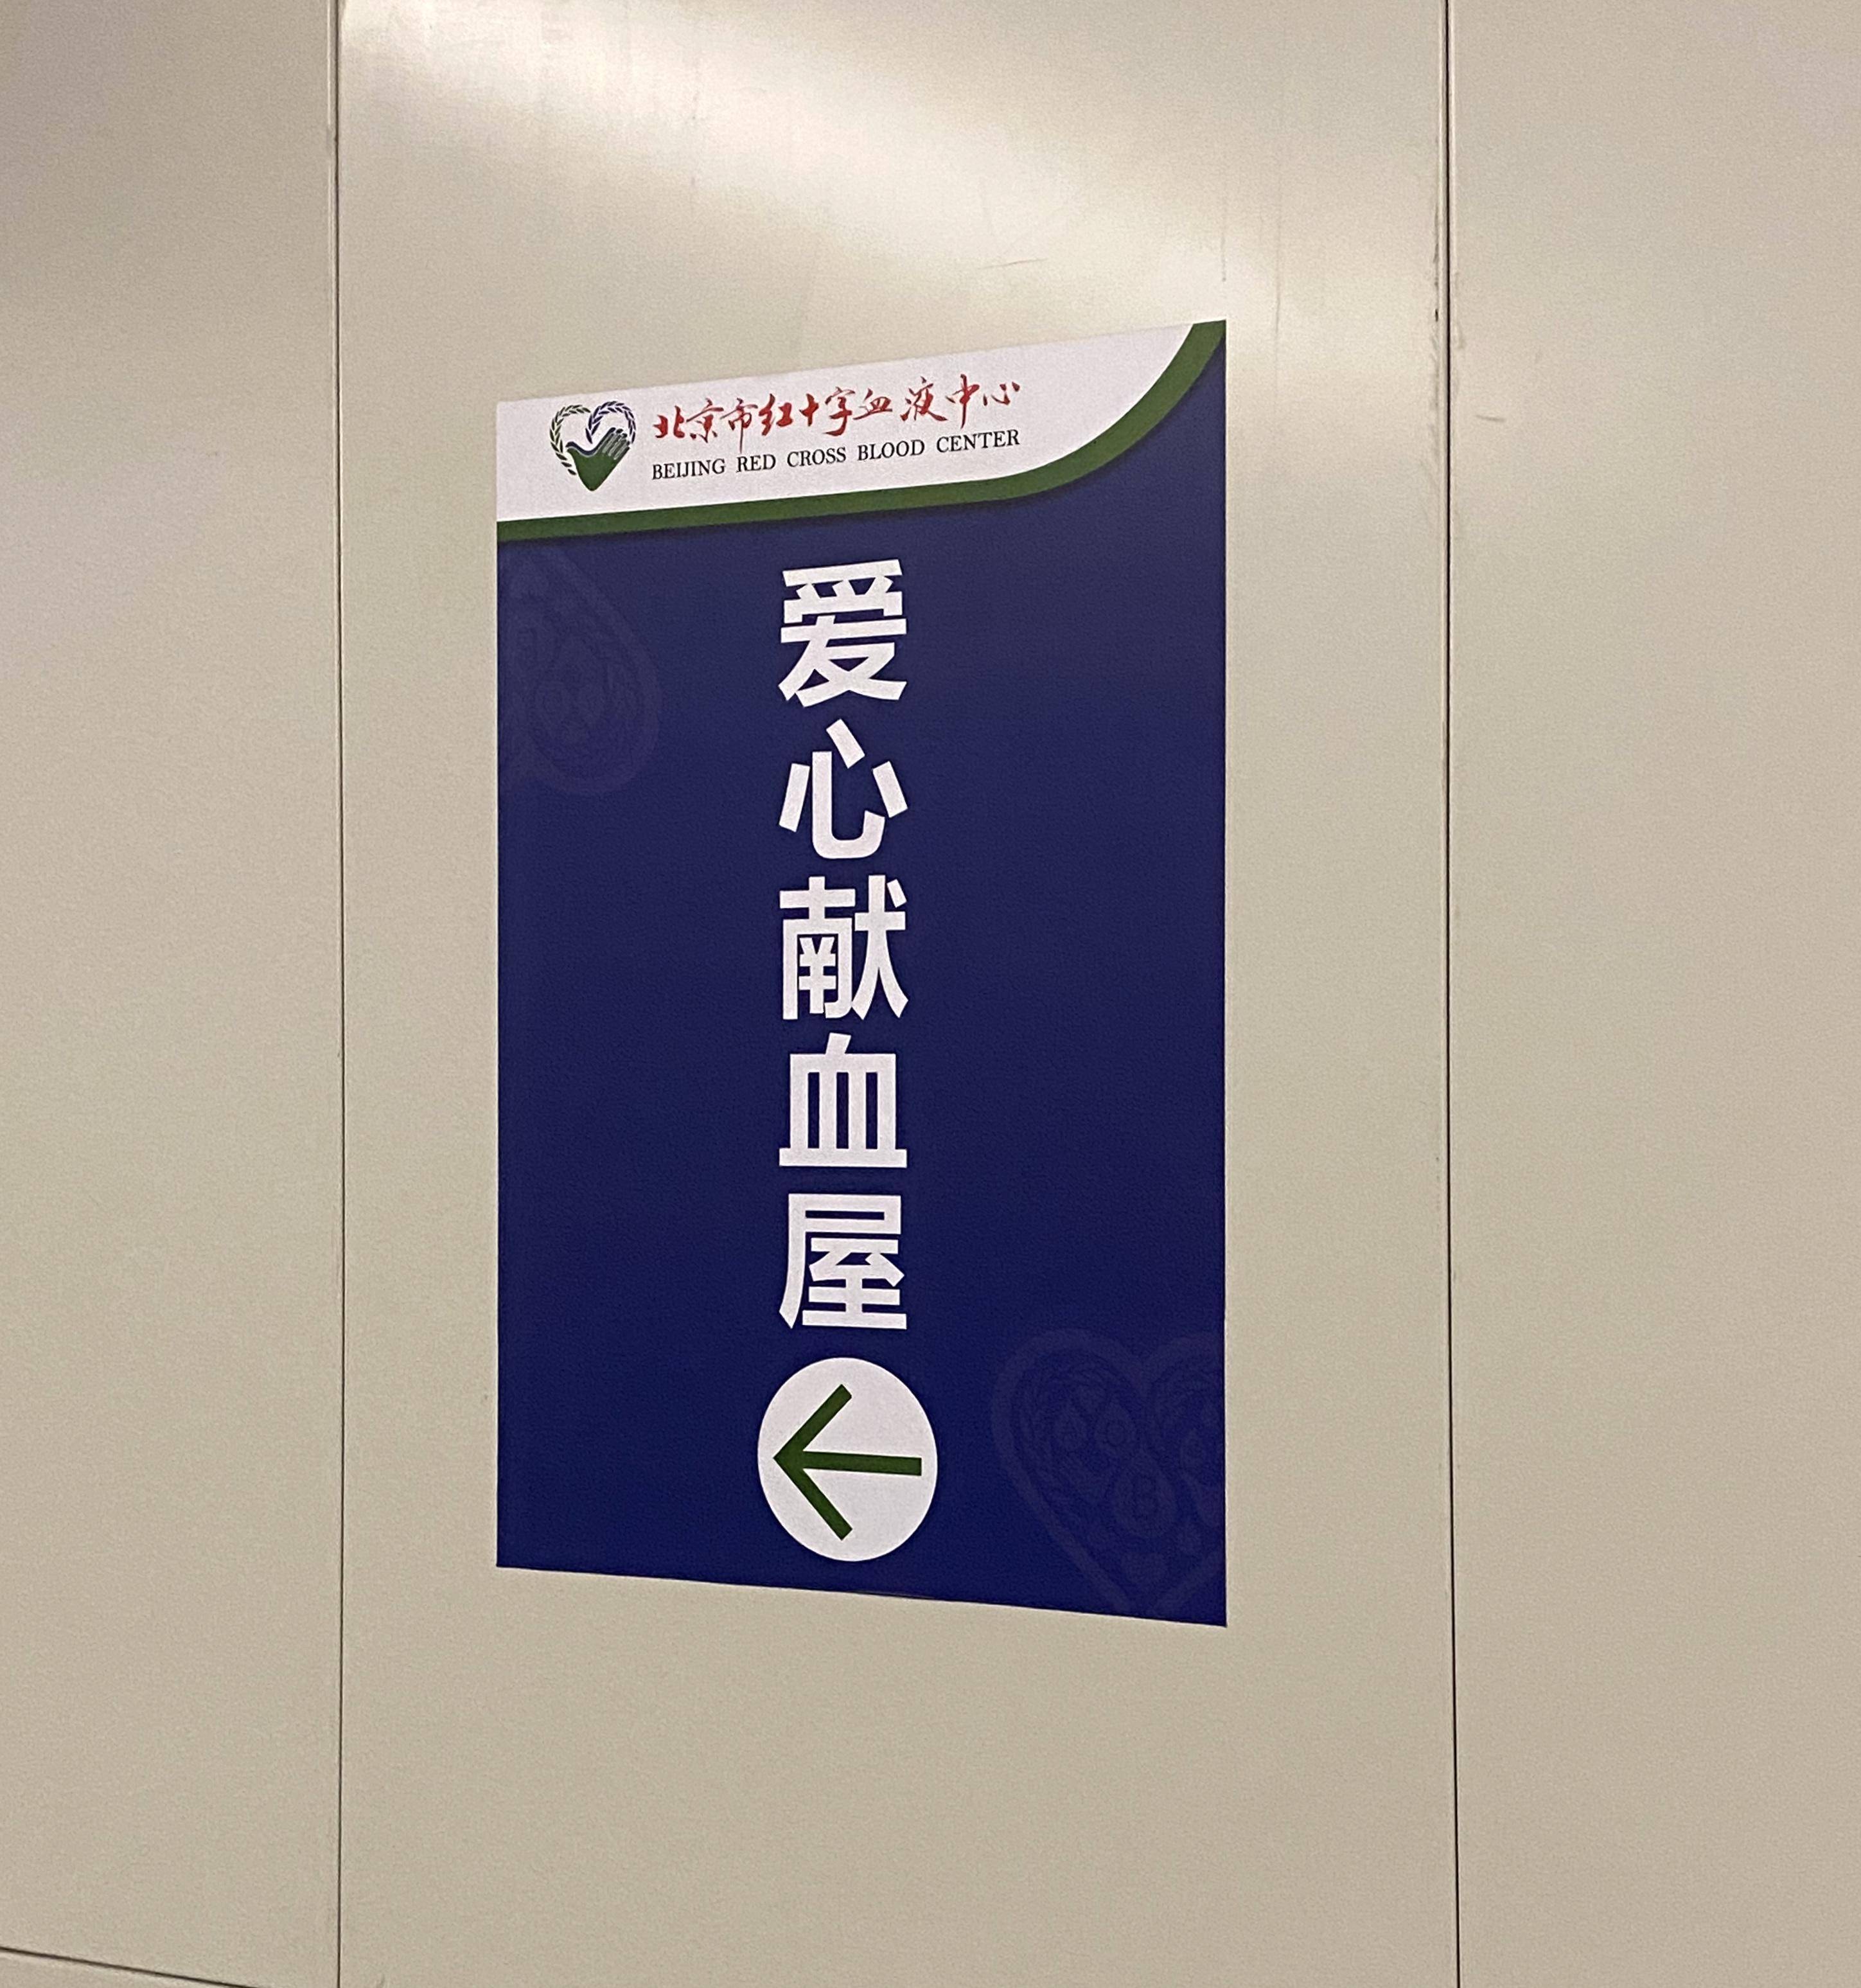 北京两座地铁献血屋开放已满月，“一上午有十多位献血者”